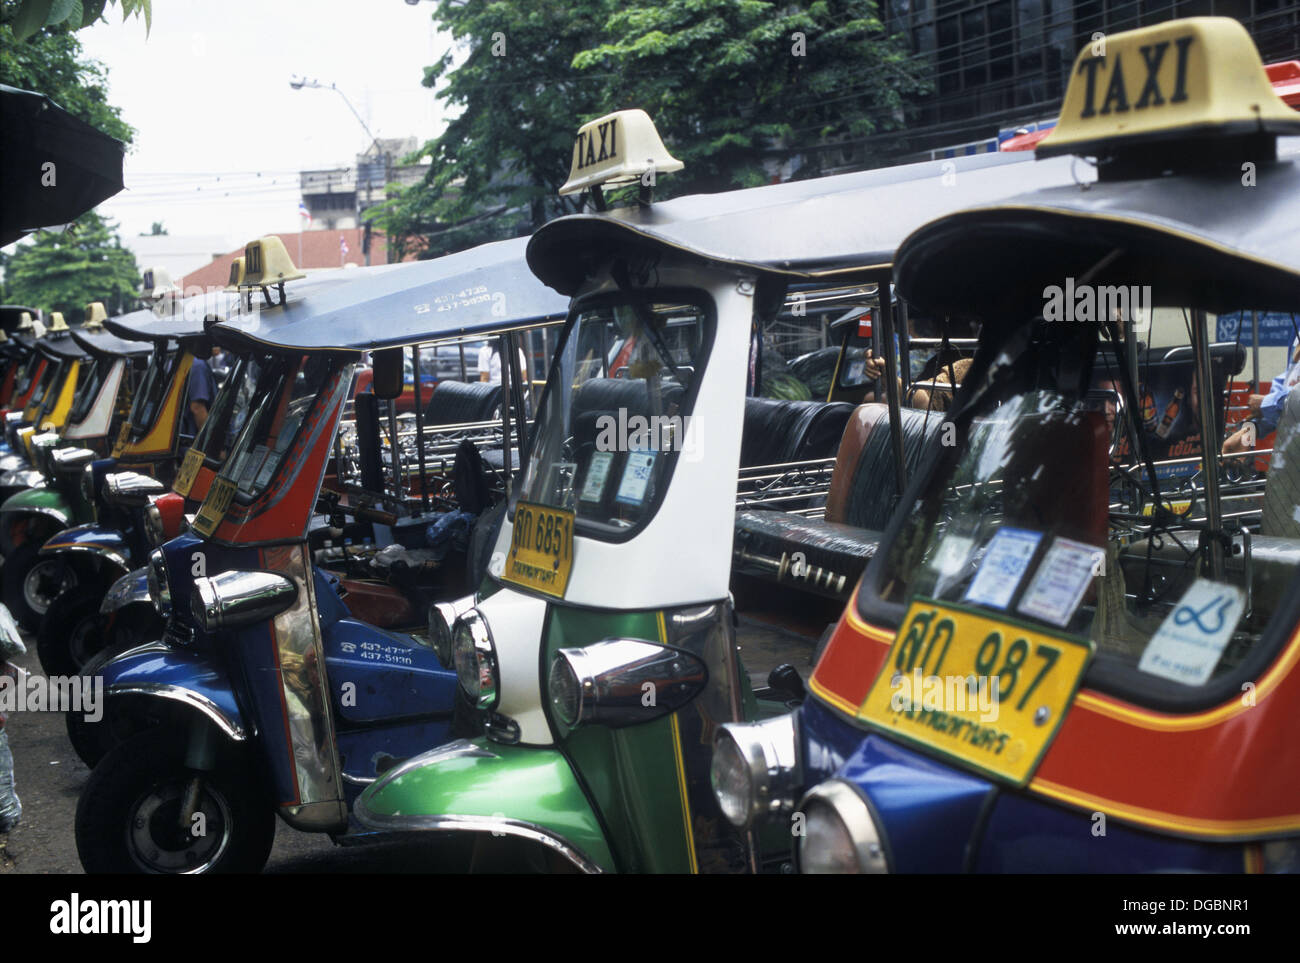 Tuk-Tuk Taxis waiting for customers at the road side, Bangkok, Thailand, Asia Stock Photo